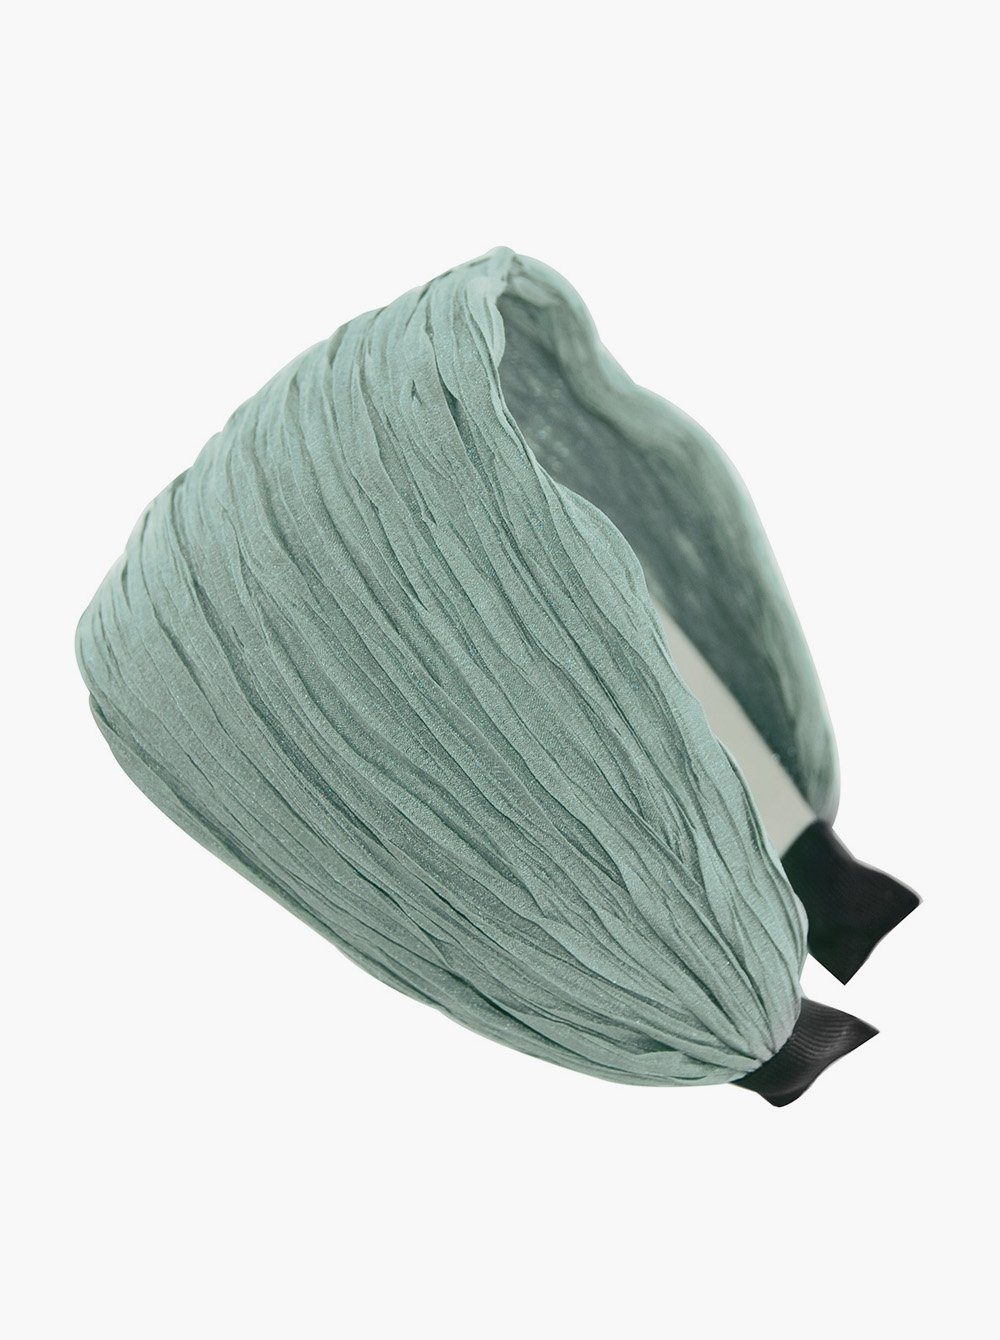 axy Haarreif Breiter Haarreif in Tuchoptik Wunderschön, Damen Breiter Haarreif (Plissierter Stoff) Haarband Haarreifen Hellgrün